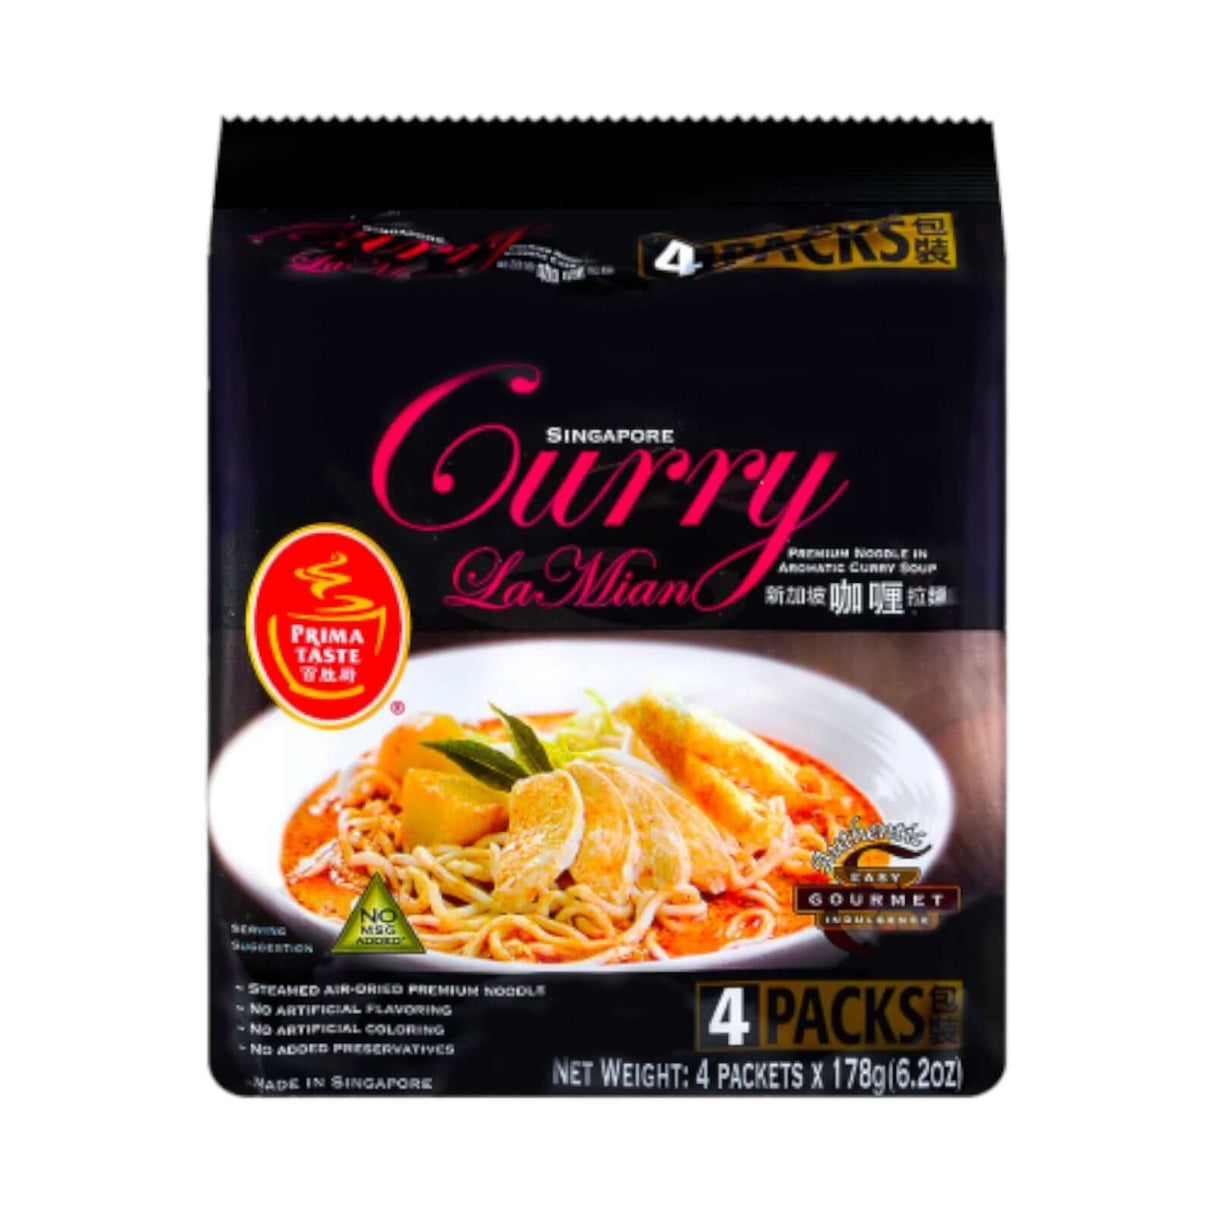 Singapore Curry La Mian Noodle